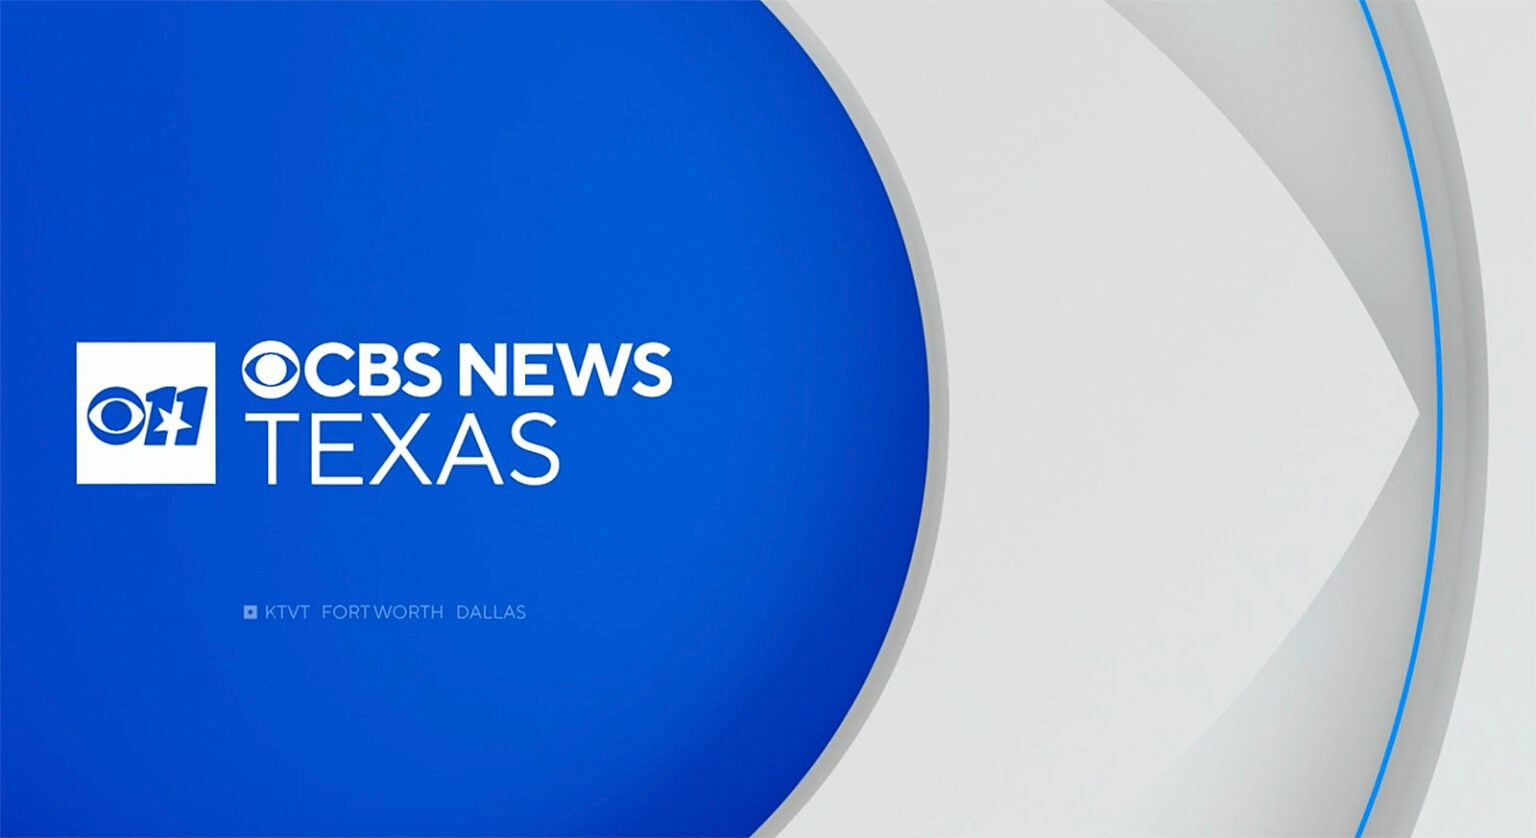 Ktvt Cbs News Texas Rebrand Logo Tv News Check